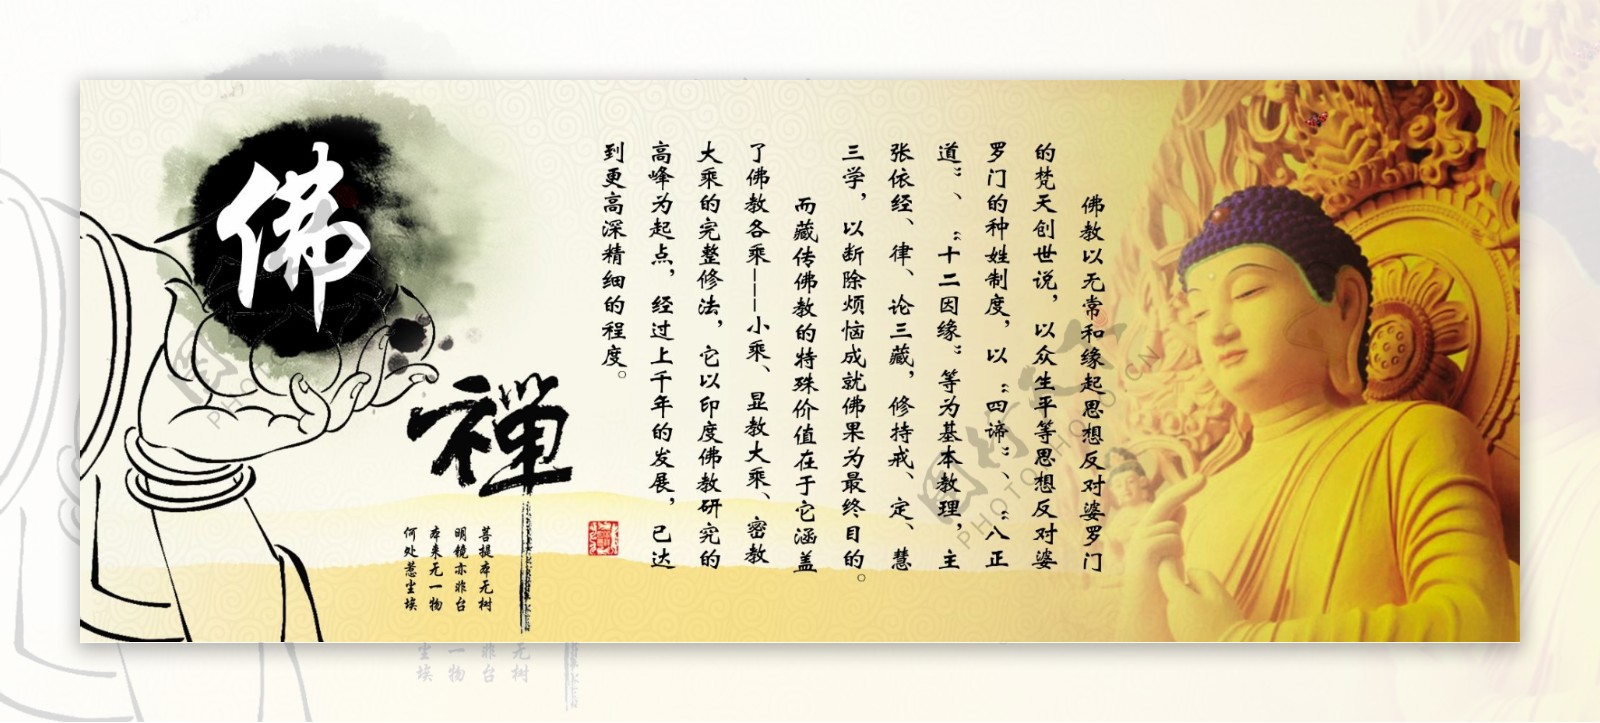 佛教文化文化长廊中国教派图片